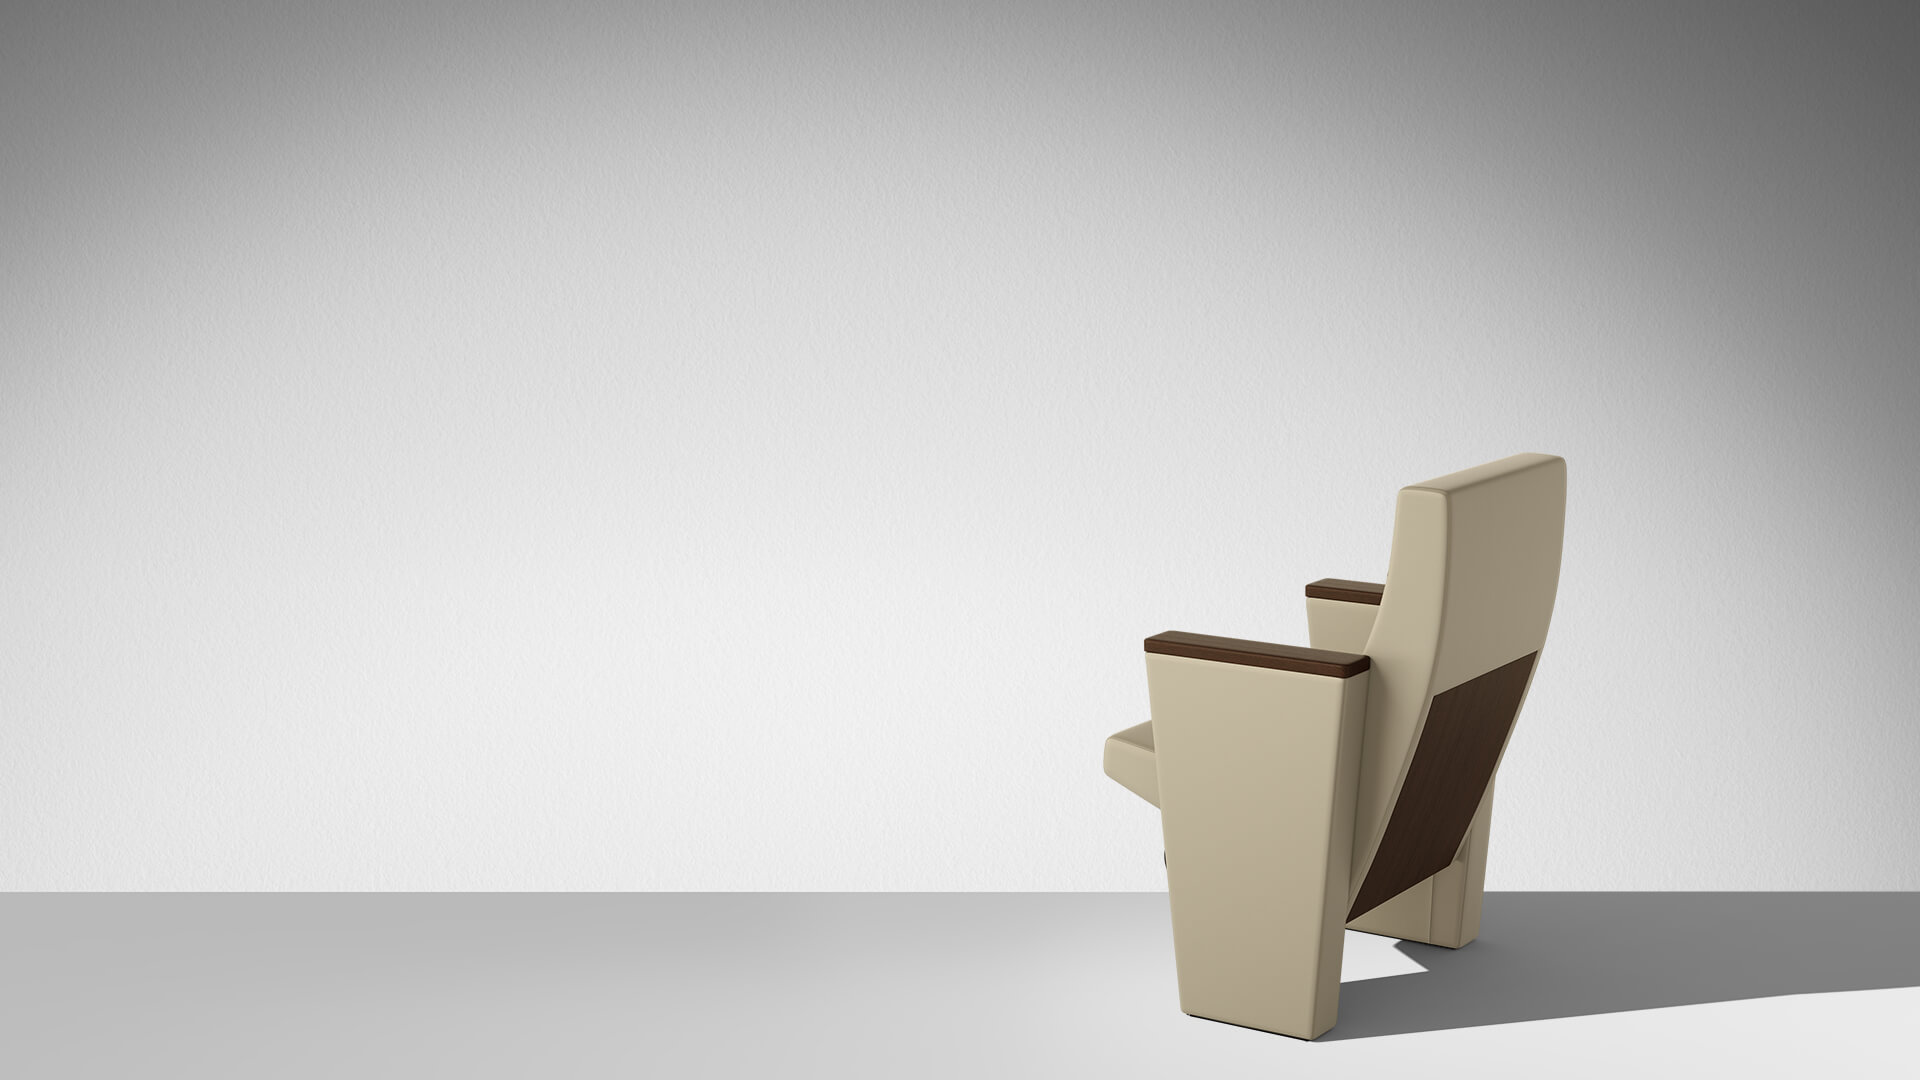 公共座椅|礼堂椅|办公家具|中国有限公司官家具|C900